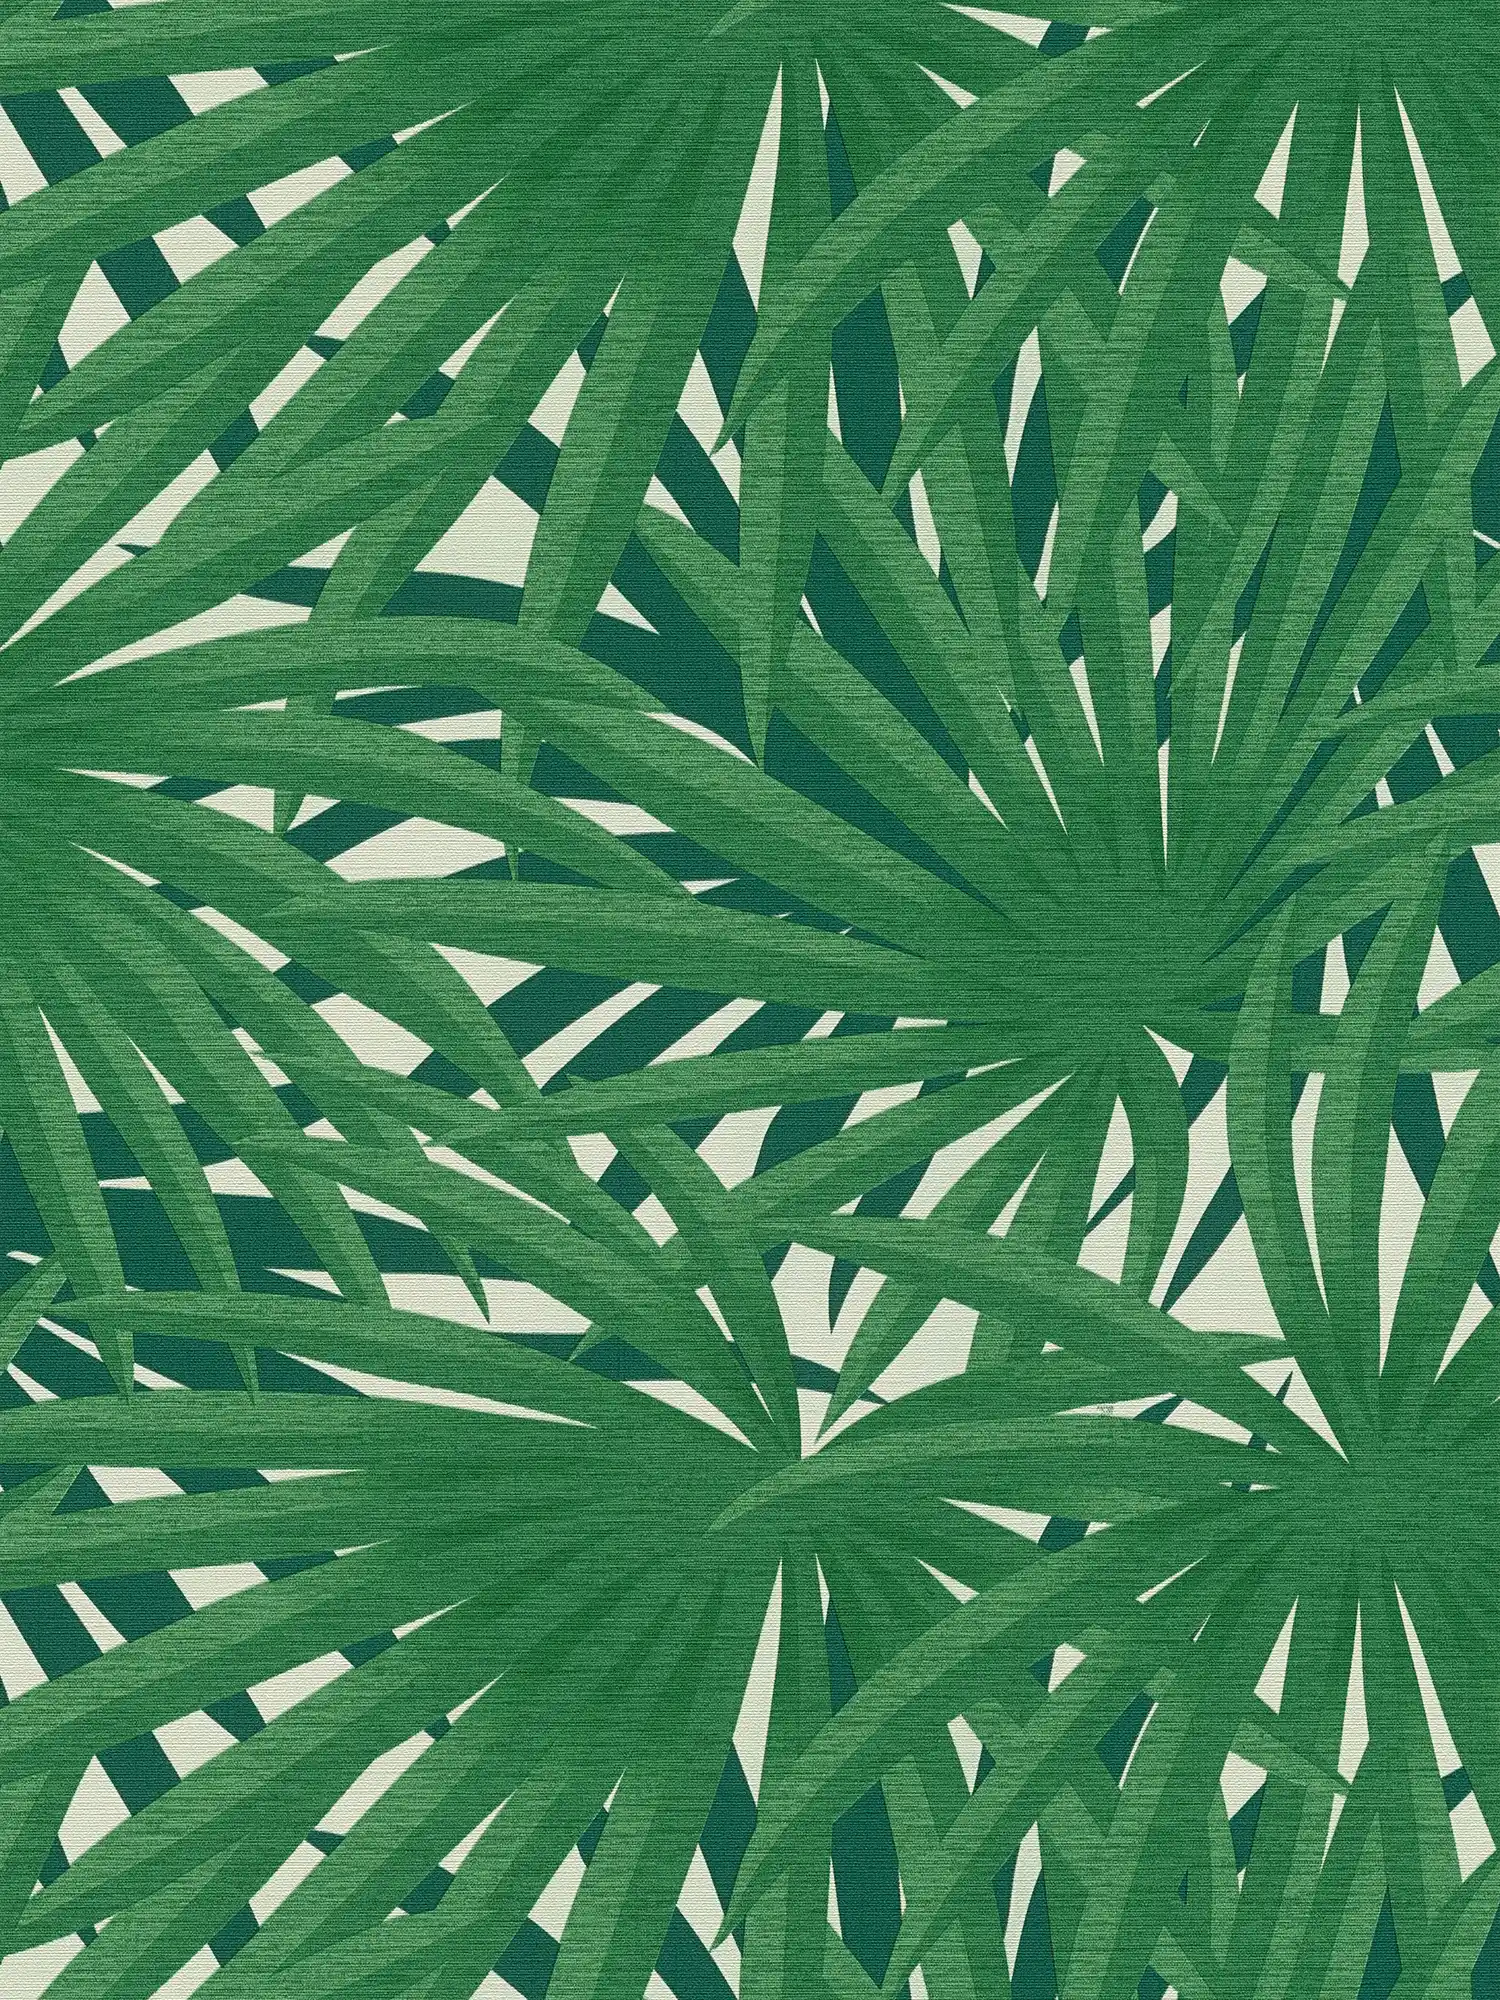 Tropisch behang met jungle design & metallic glans - groen, metallic, wit
